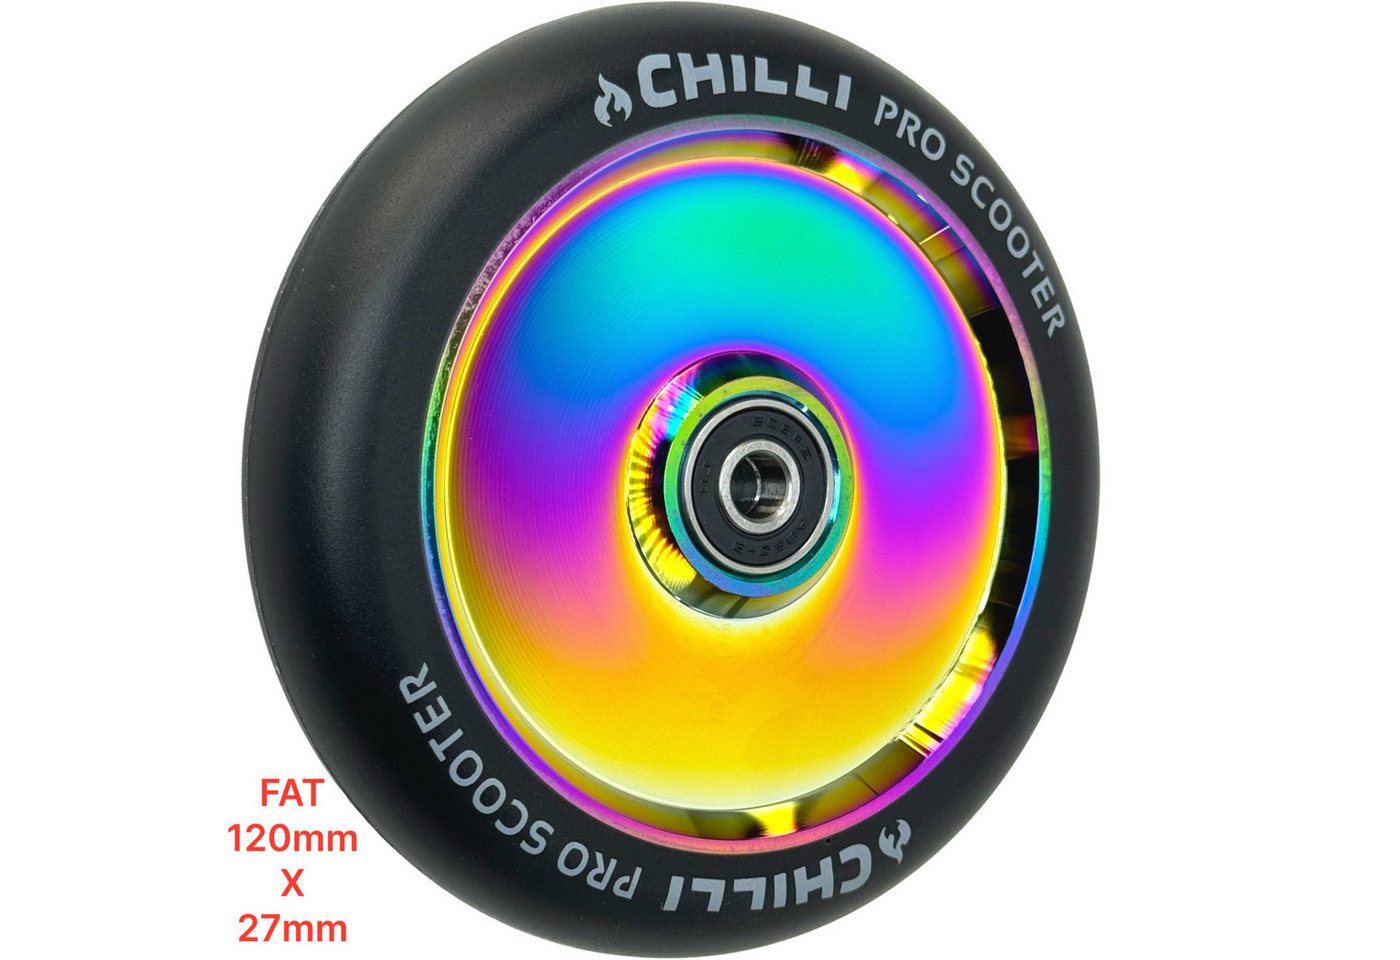 Chilli Stuntscooter Chilli Pro Rolle FAT 120 x 27mm Rollstuhl Bobbycar Racing Neochrome von Chilli